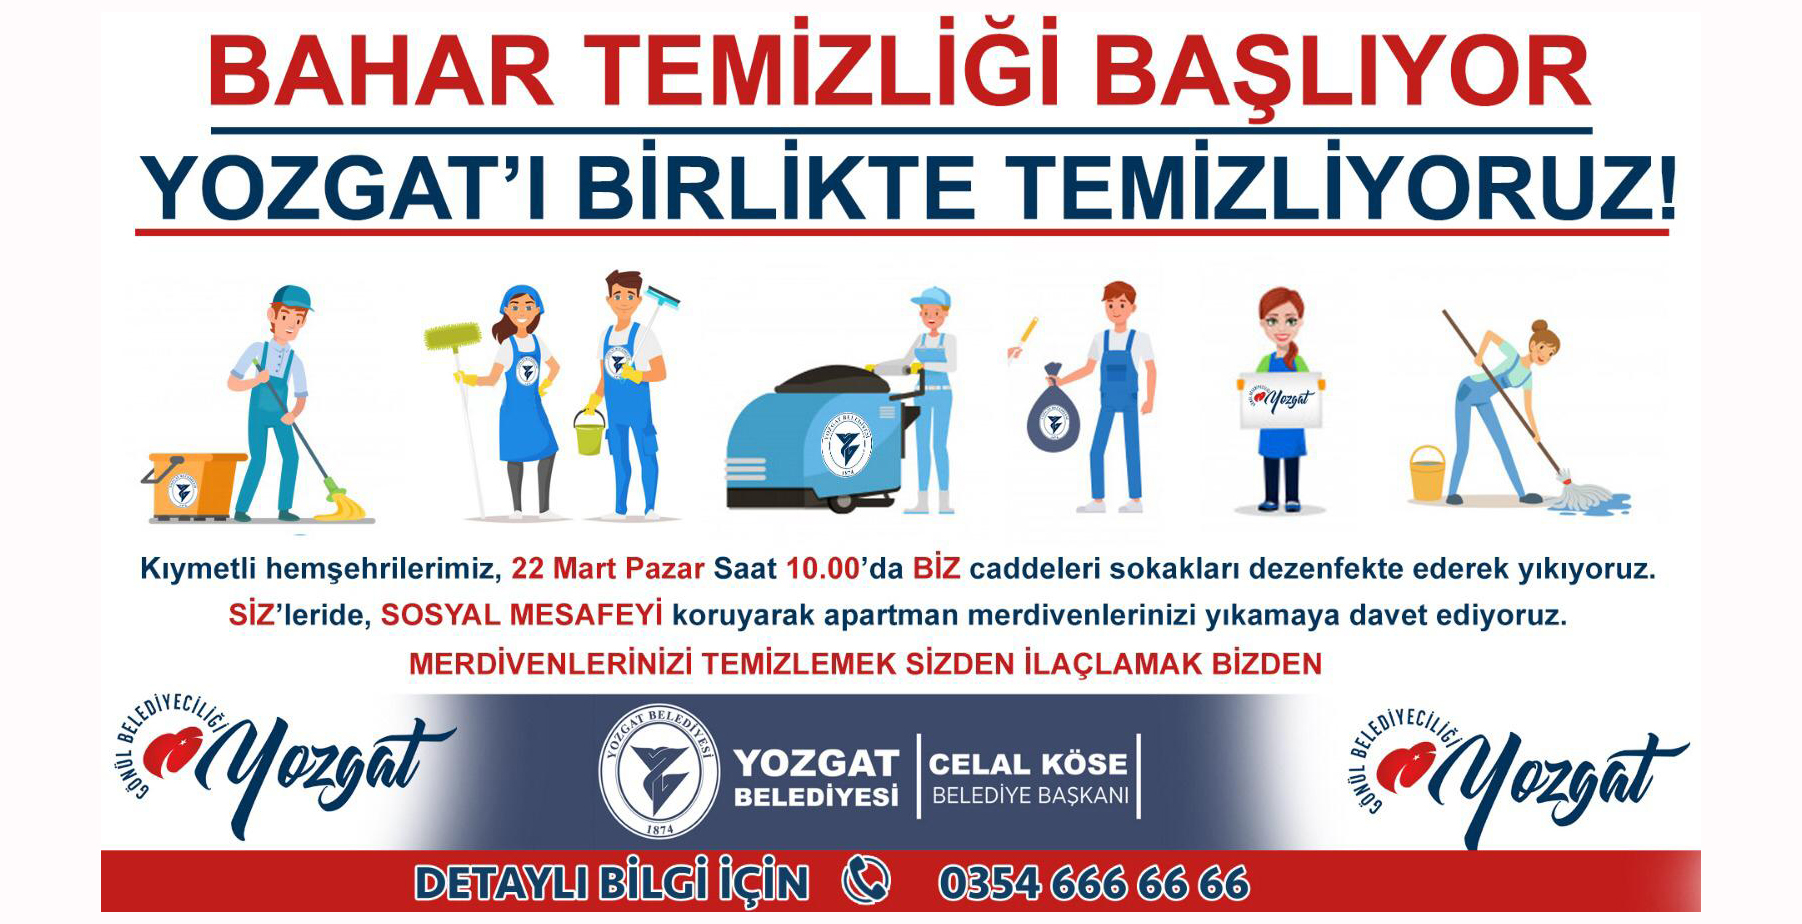 Yozgat'ı birlikte temizliyoruz!